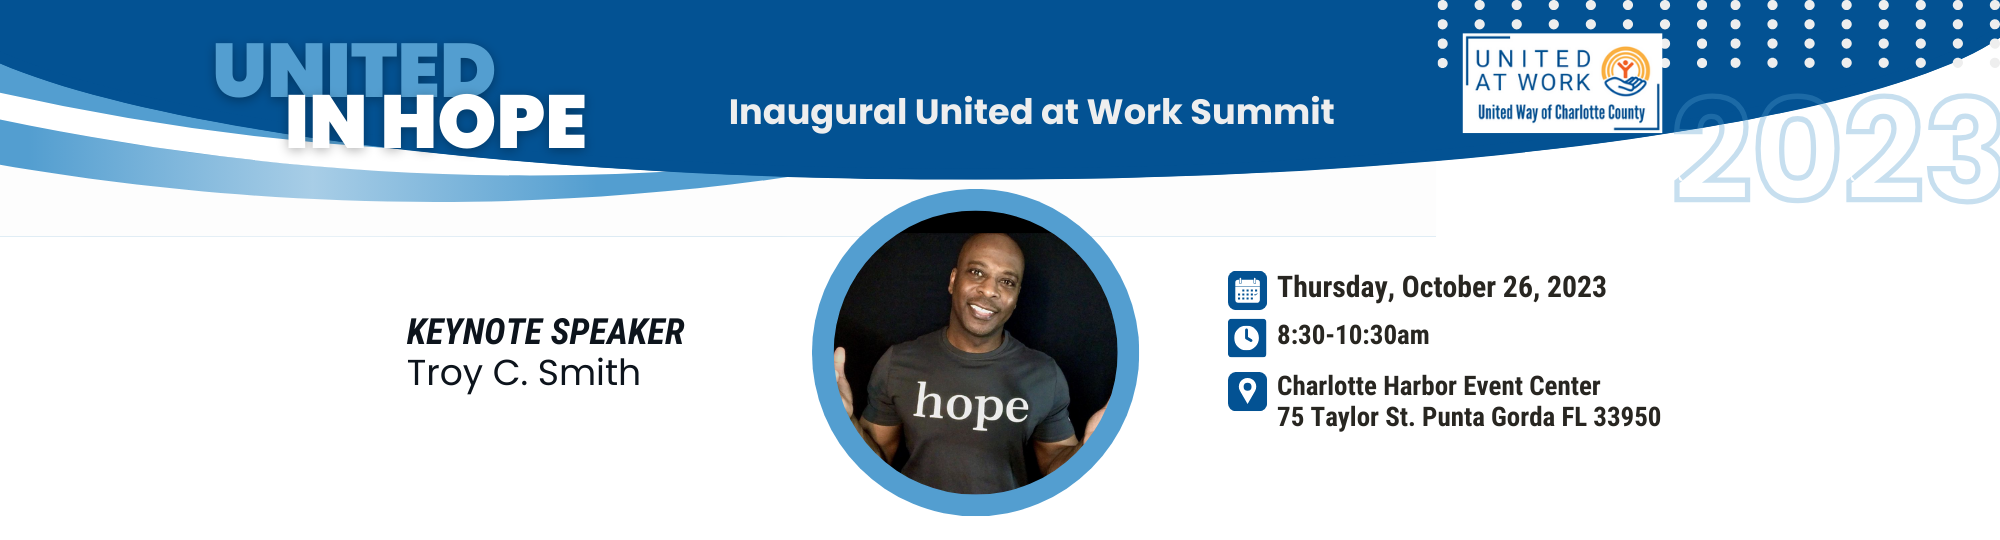 United at Work Summit